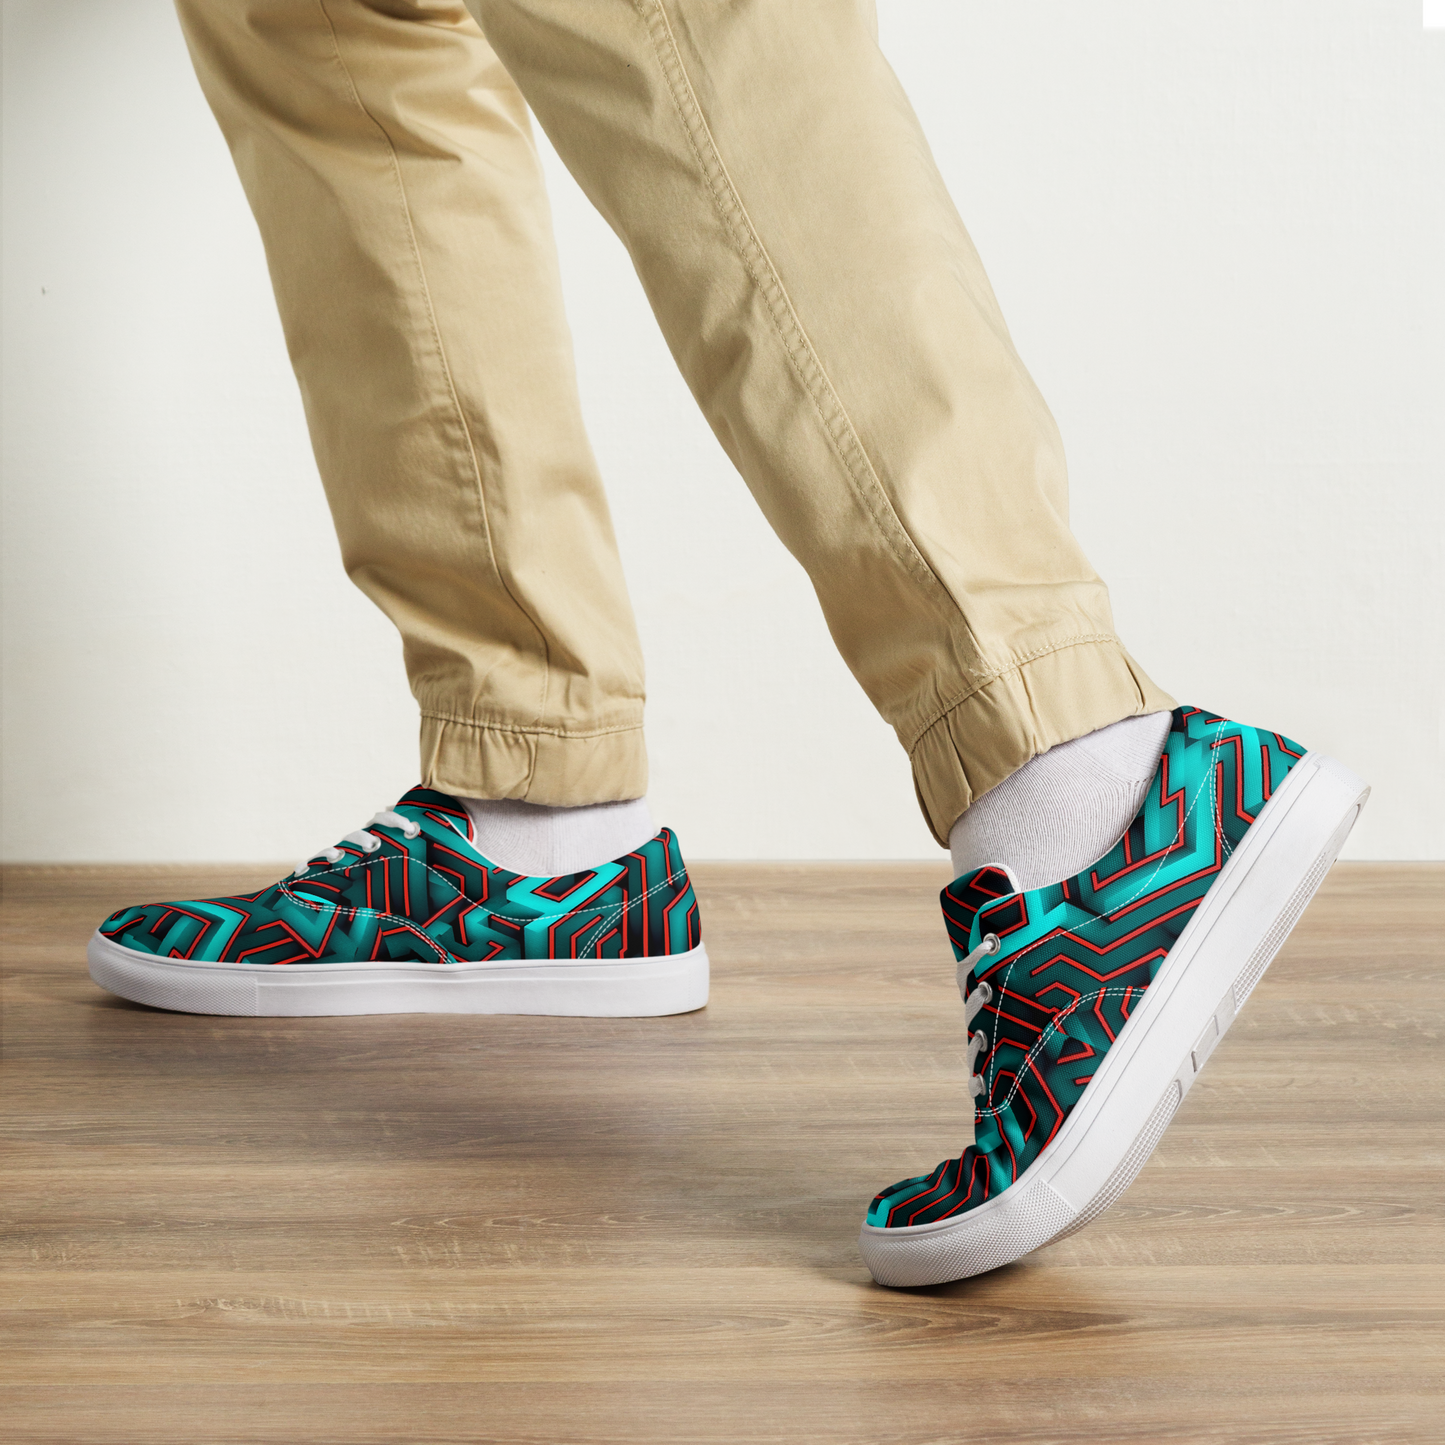 3D Maze Illusion | 3D Patterns | Men's Lace-Up Canvas Shoes - #2